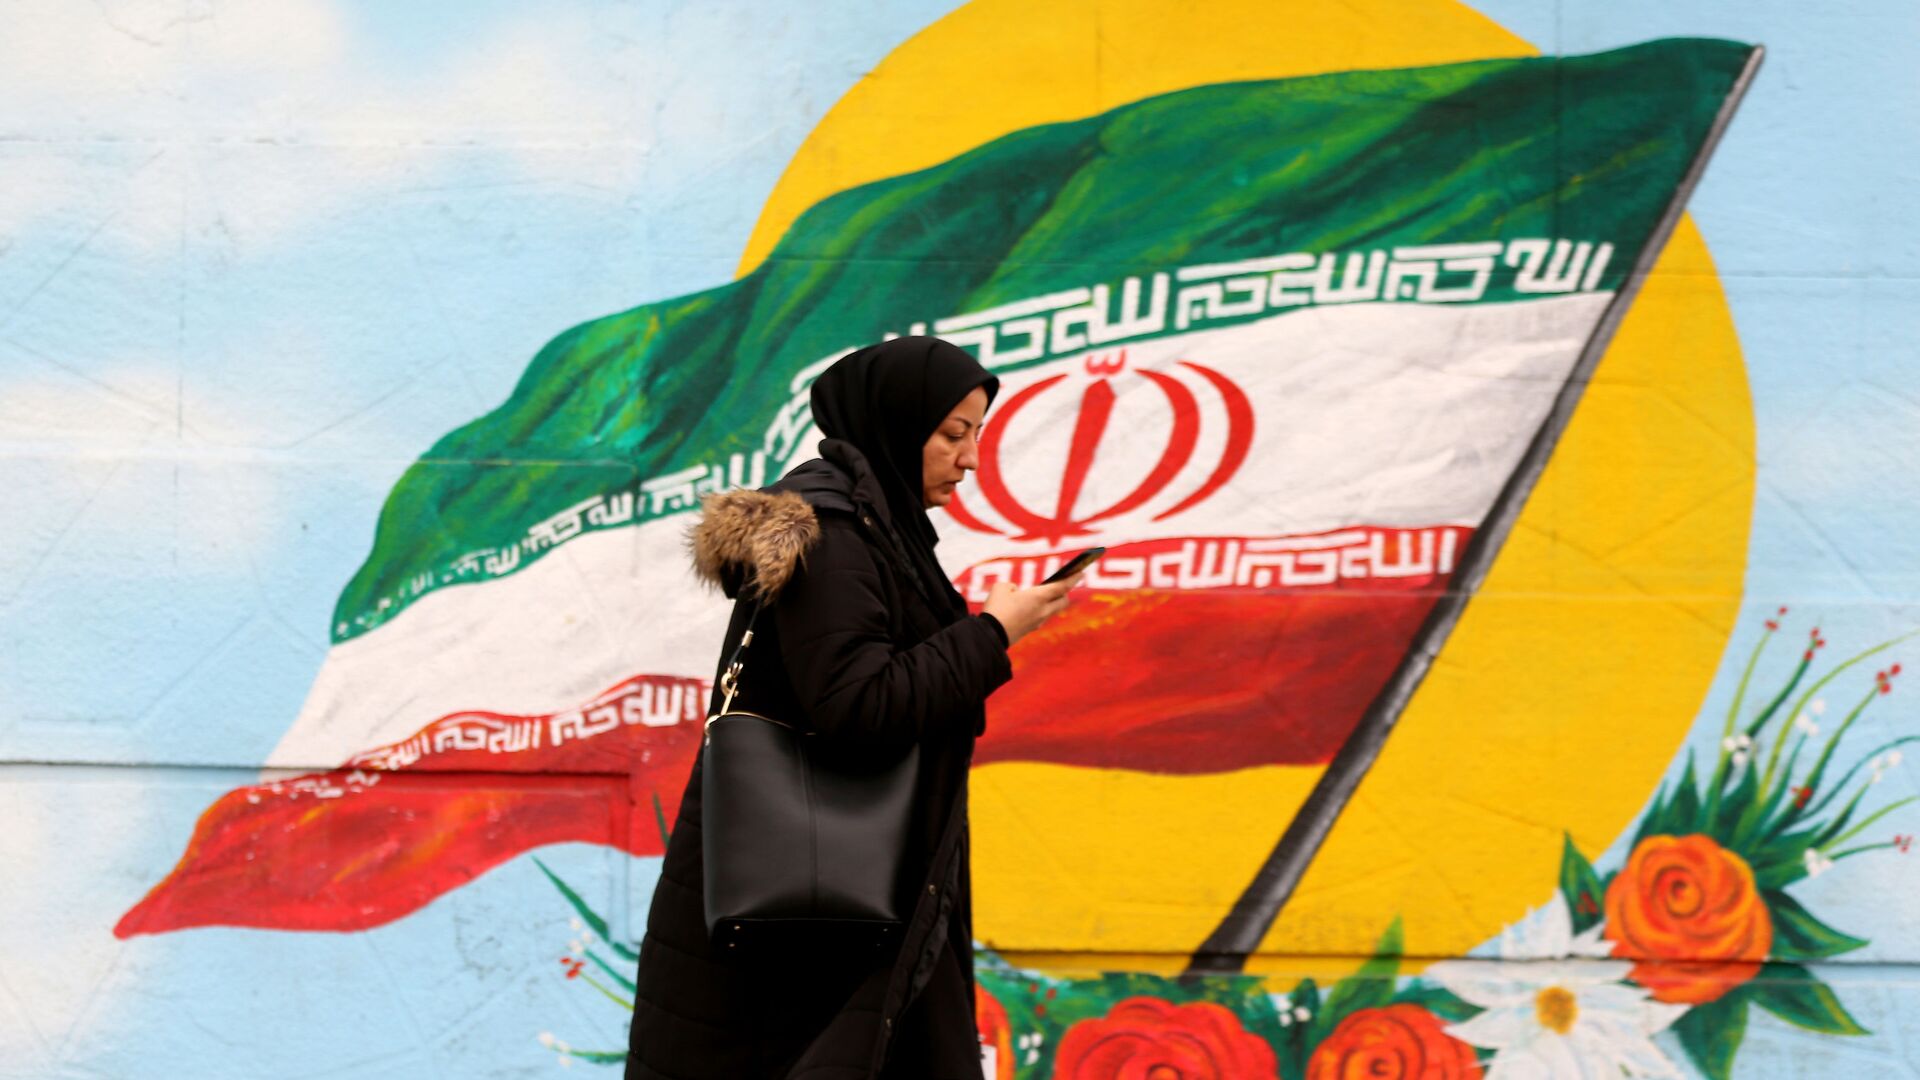 Женщина проходит перед фреской, на которой изображен иранский национальный флаг, фото из архива - Sputnik Азербайджан, 1920, 07.06.2021